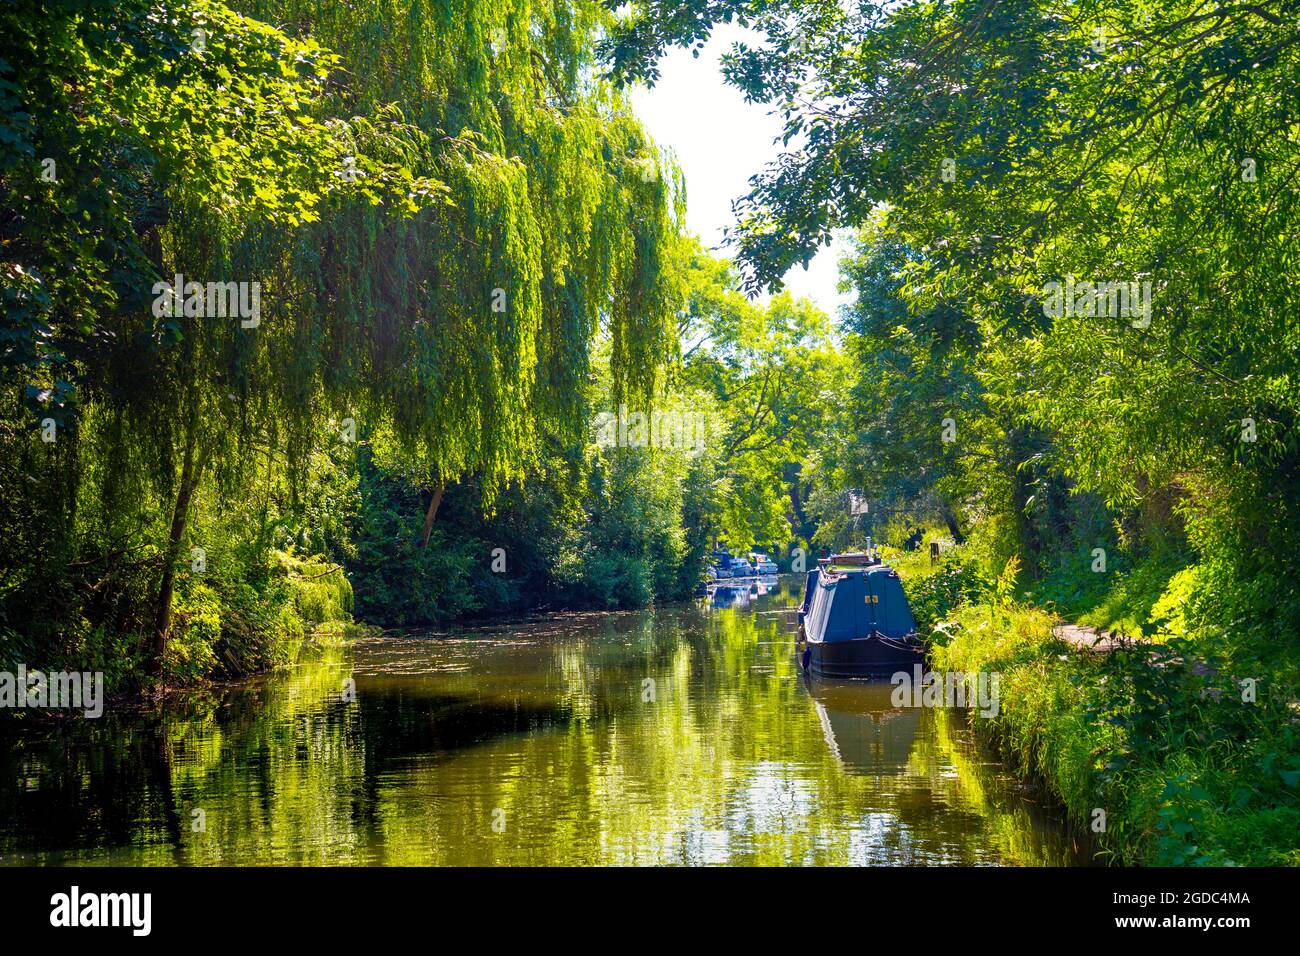 Des arbres verdoyants et des bateaux de ménage amarrés le long de la rivière Sort à Sawbridgeworth, Hertfordshire, Royaume-Uni Banque D'Images